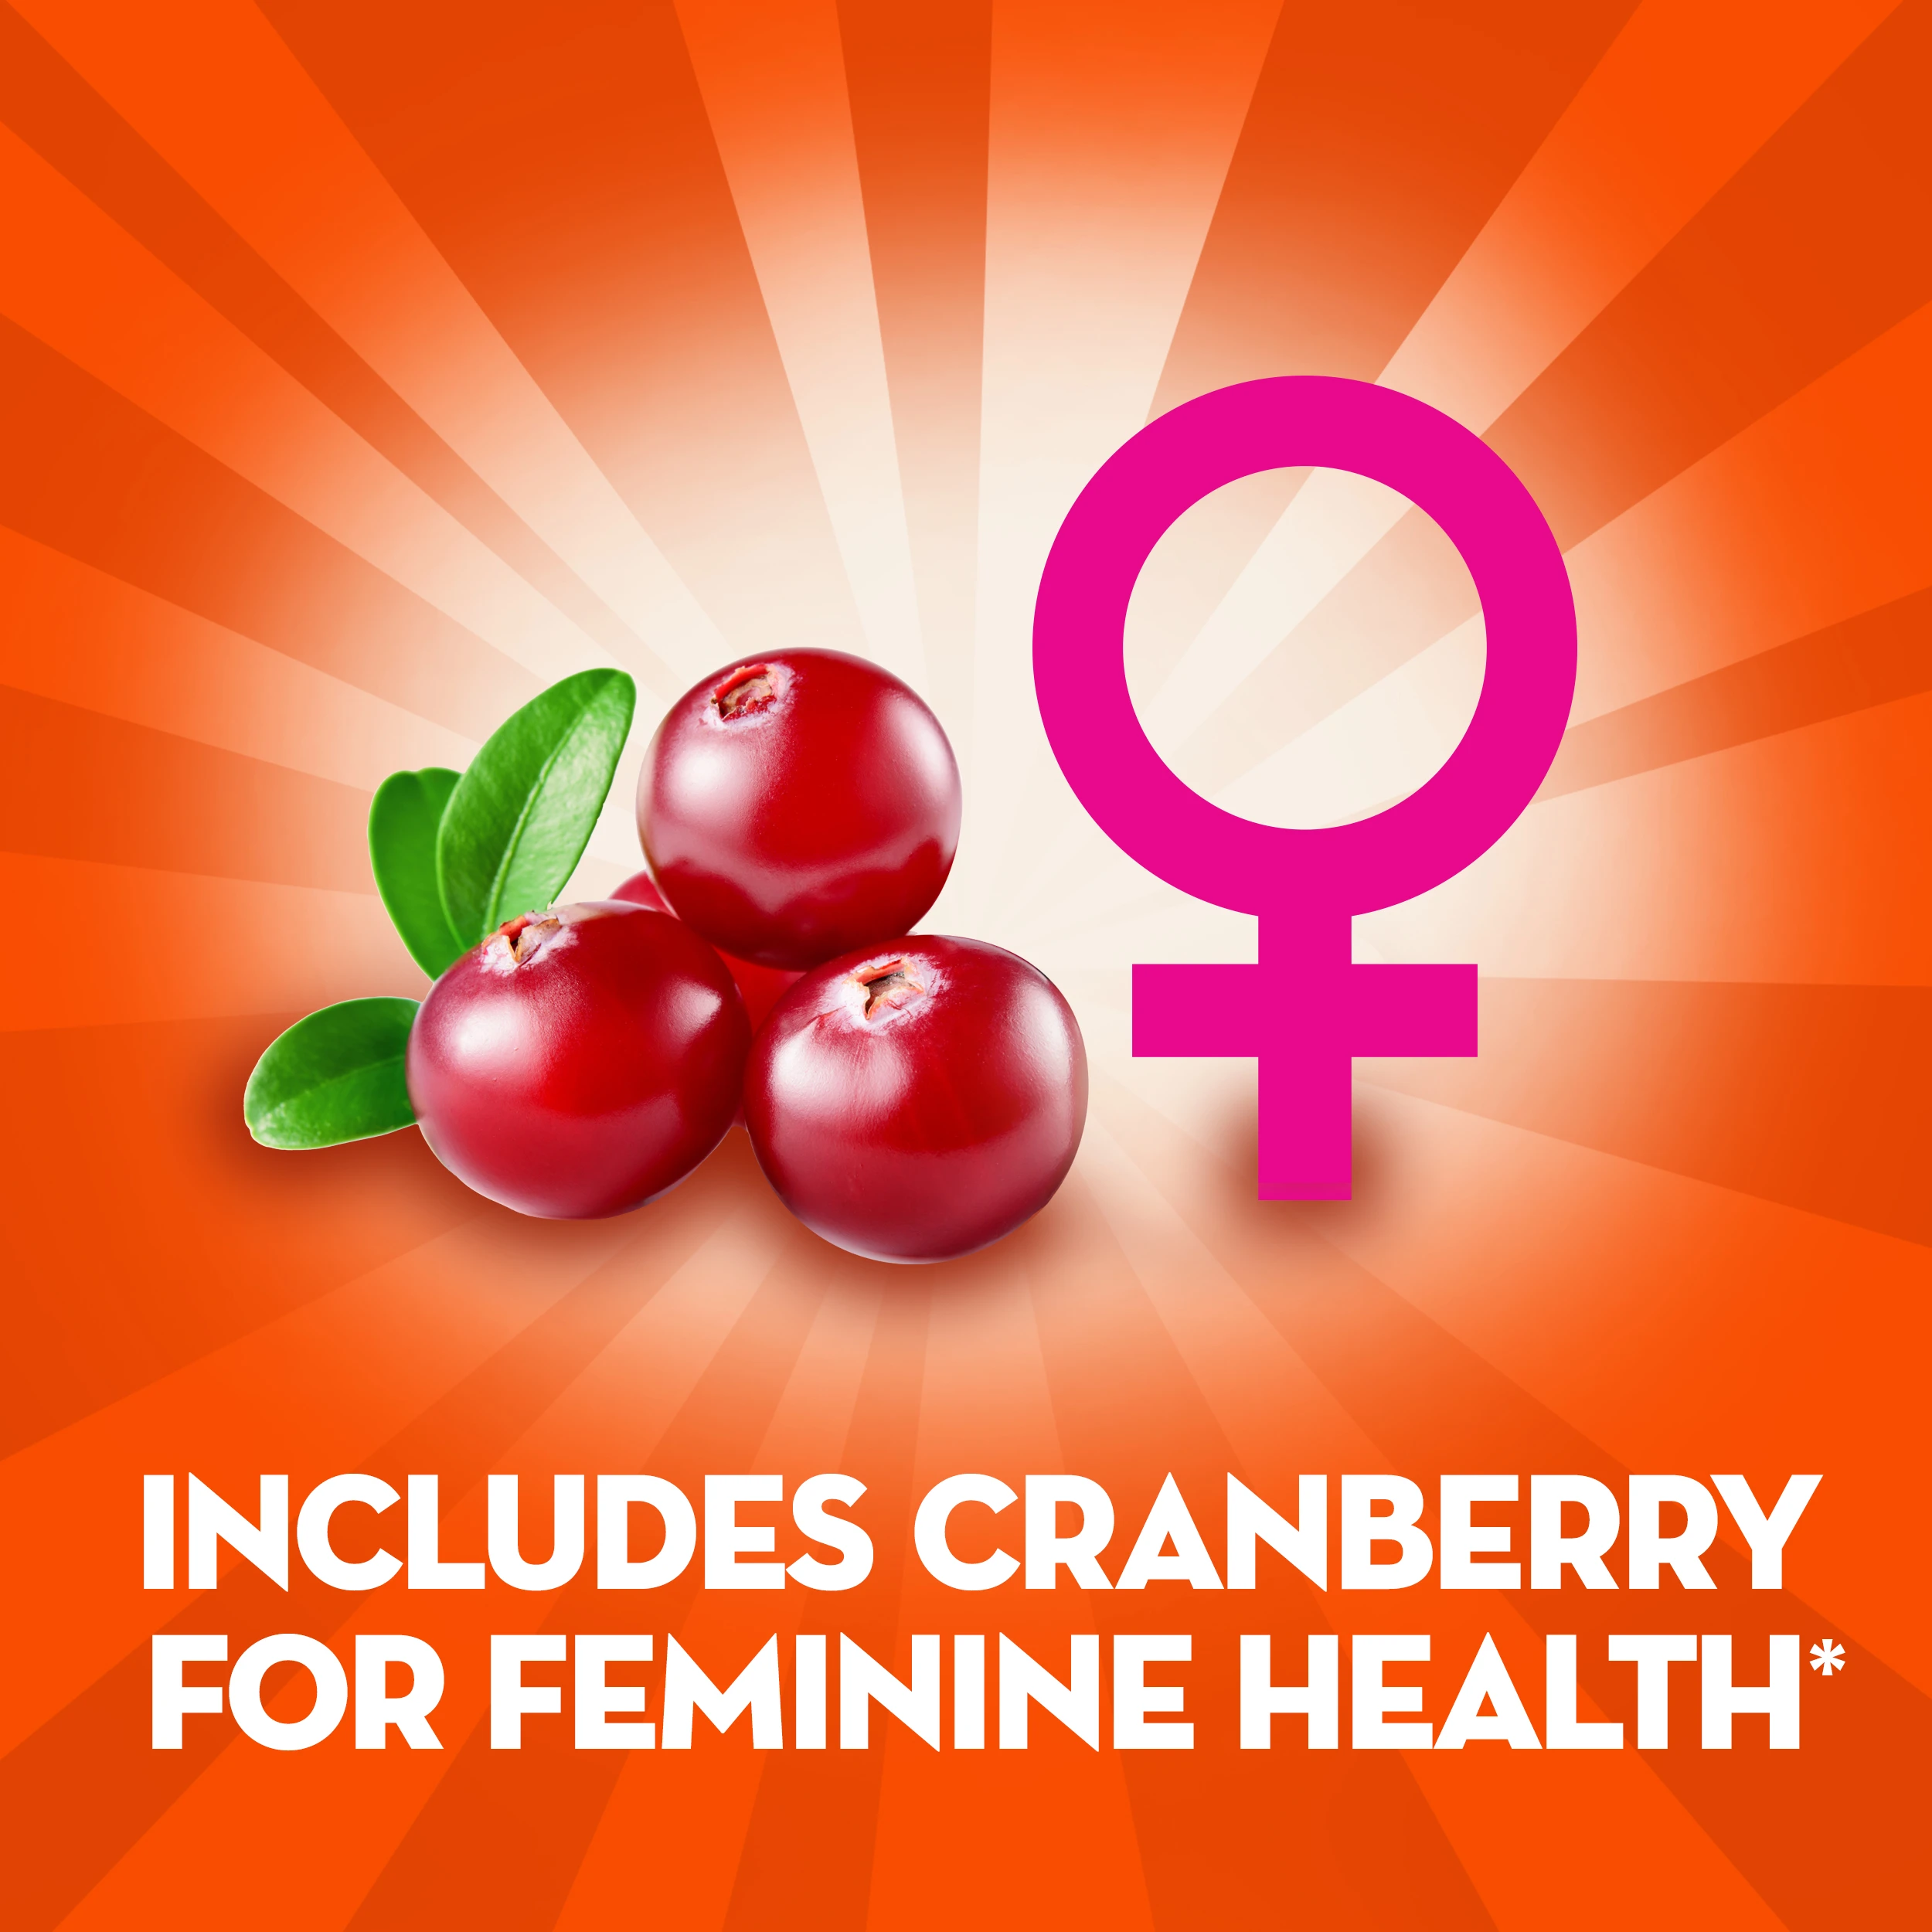 Align Women's Health Prebiotic + Probiotic Supplement Gummies